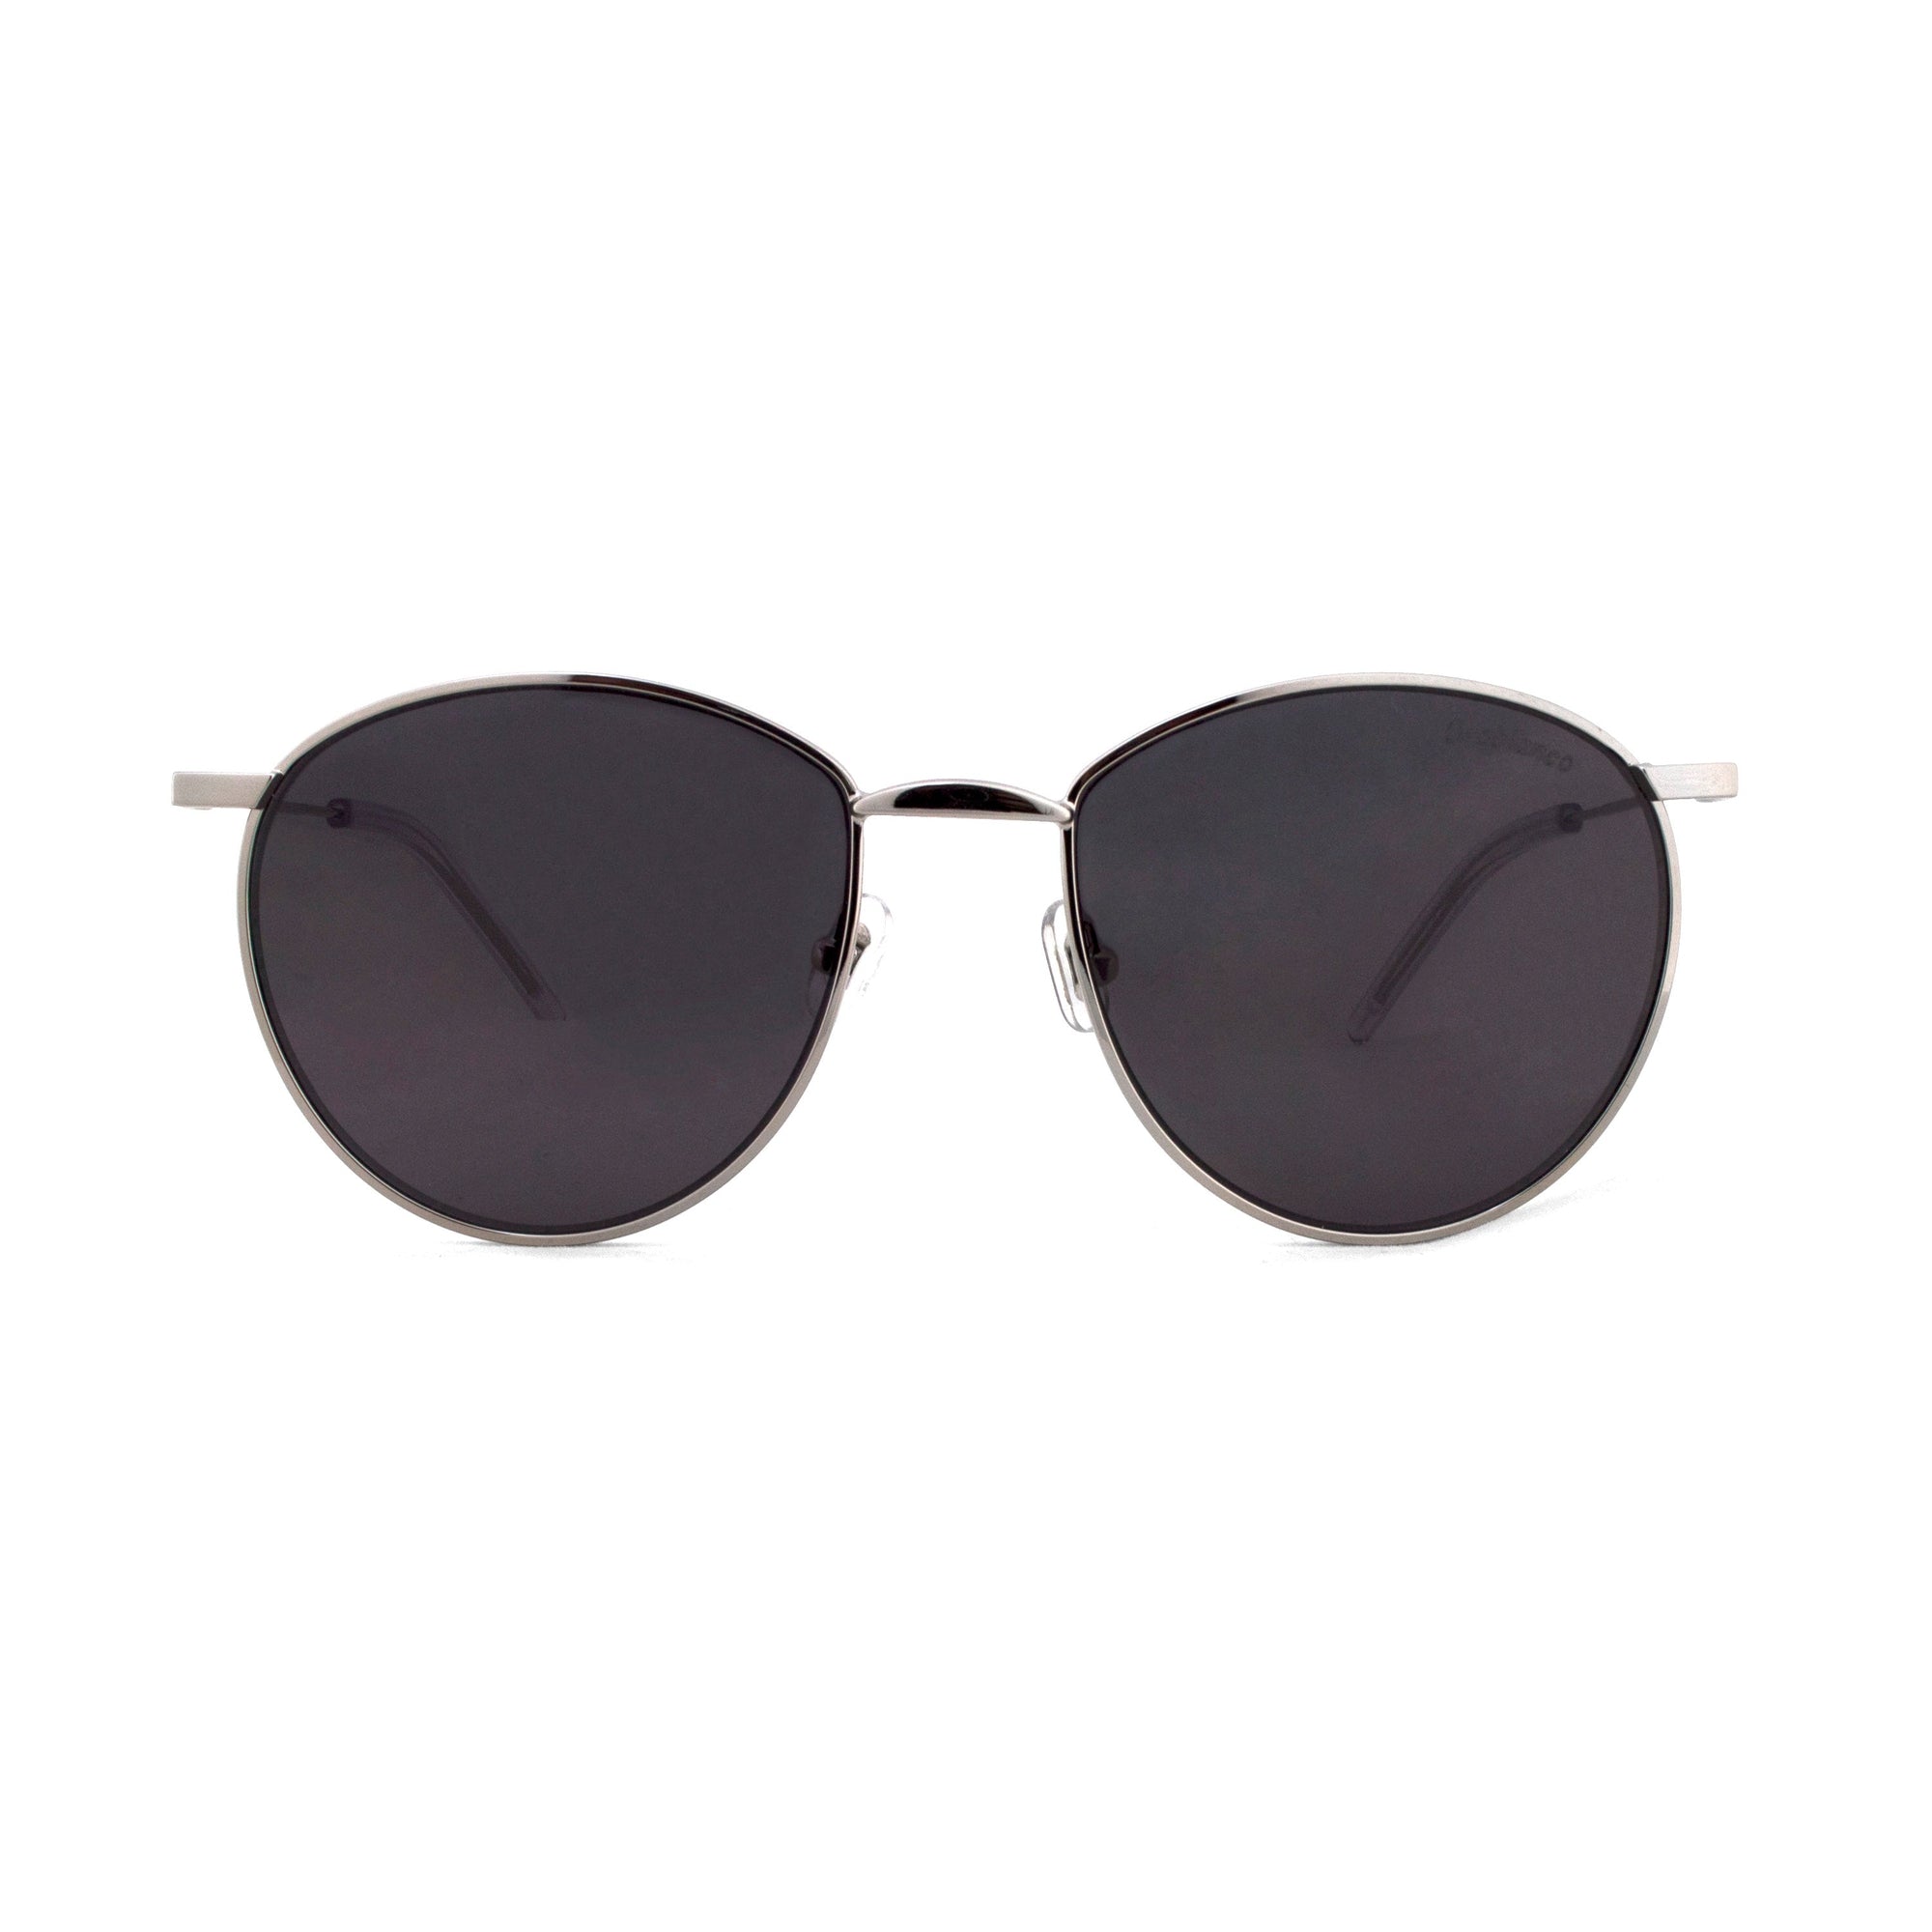 Orobianco Sunglasses-Sunglasses-Orobianco-Black-Cufflinks.com.sg